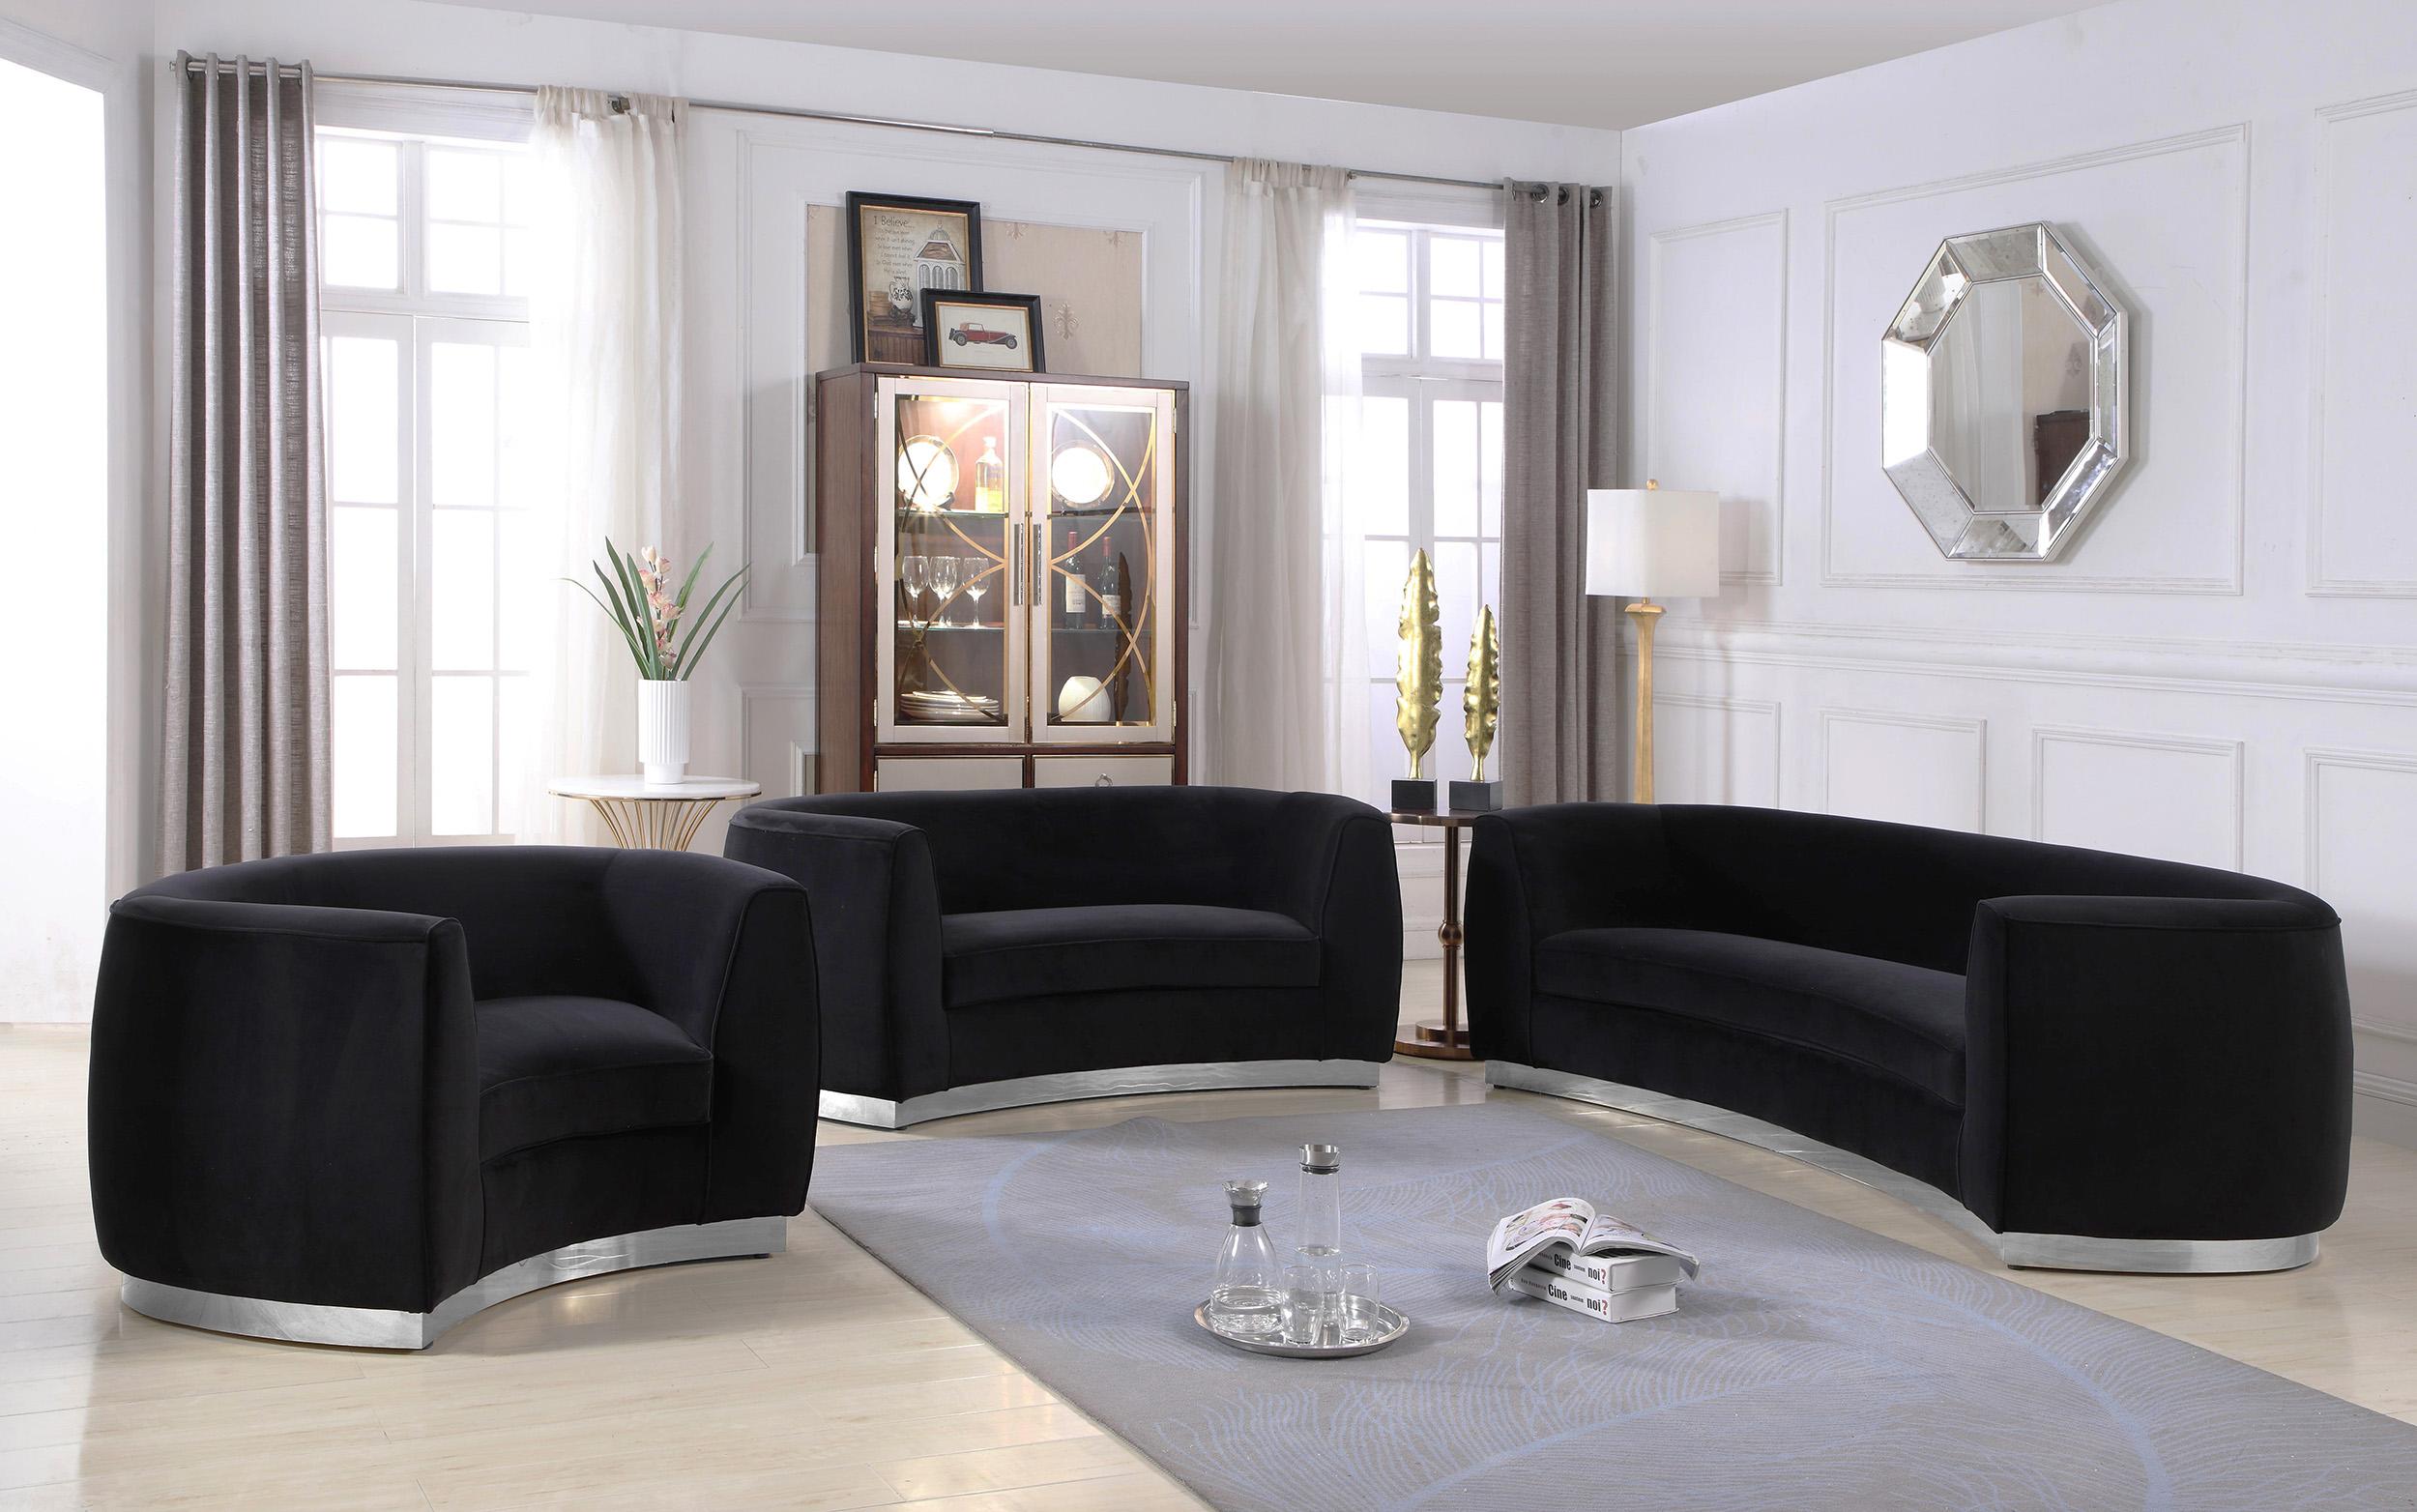 Contemporary, Modern Sofa Set Julian 621Black-S-Set-3 621Black-S-Set-3 in Black Soft Velvet